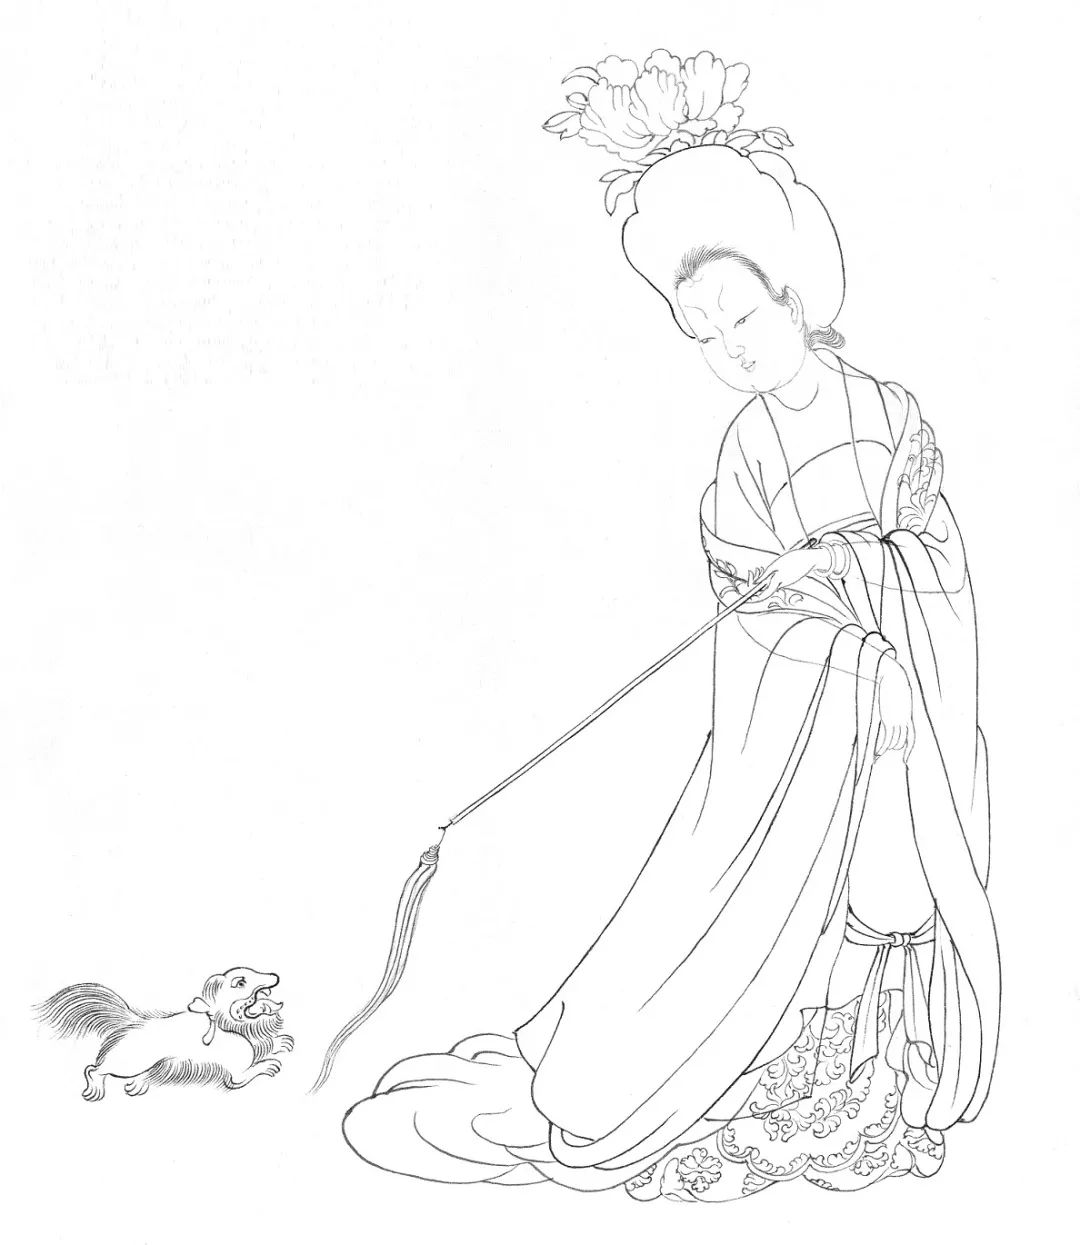 第一步:勾线郭慕熙摹绘《簪花仕女图》描绘了春夏之交时,宫廷贵族妇女